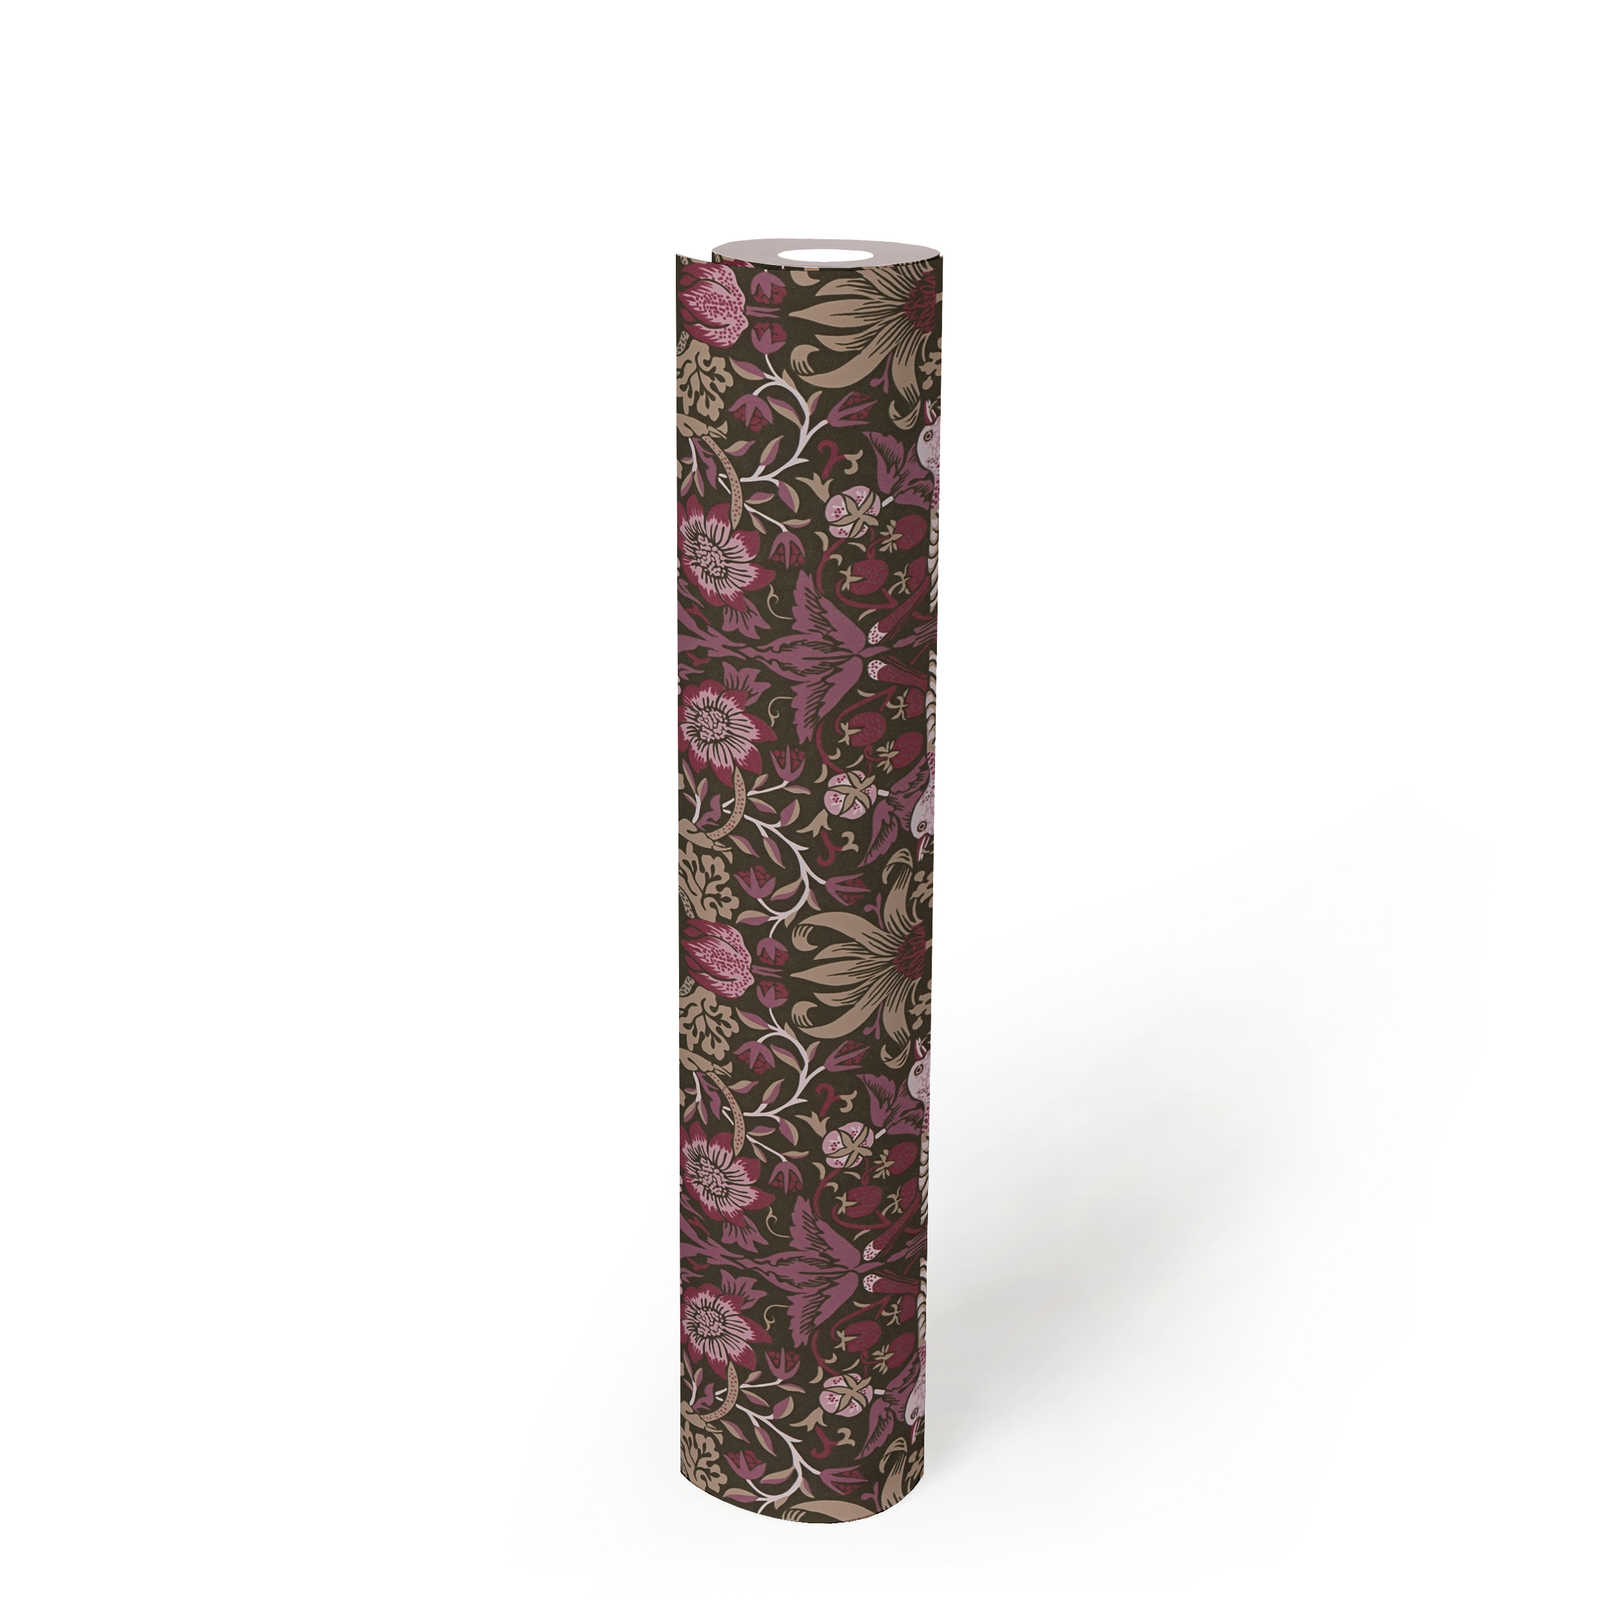             Papier peint intissé motif floral avec oiseaux & baies - violet , beige, noir
        